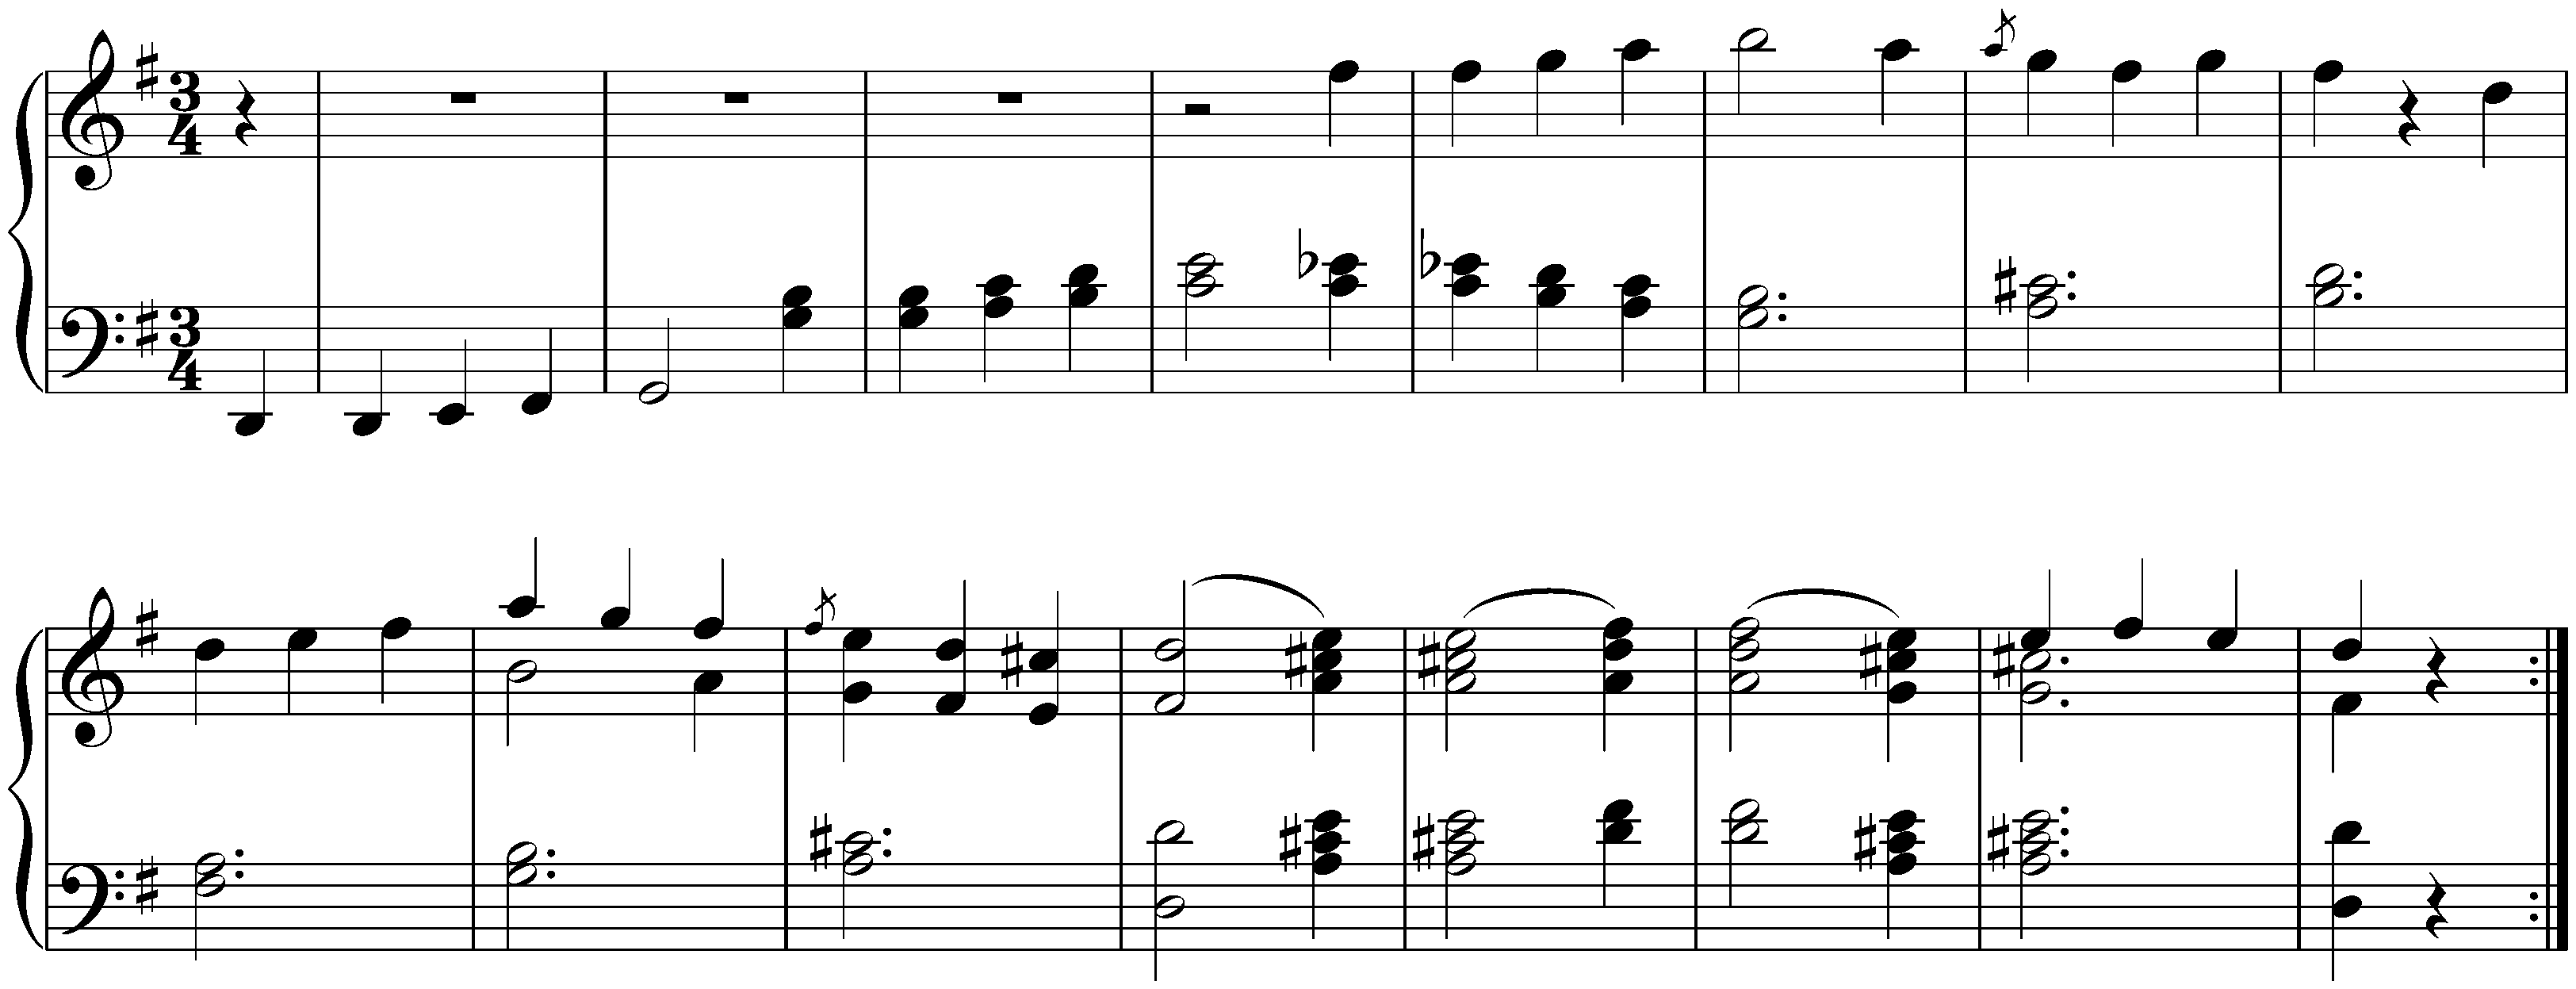 Scherzo from the piano trio in G major, op. 1 no. 2